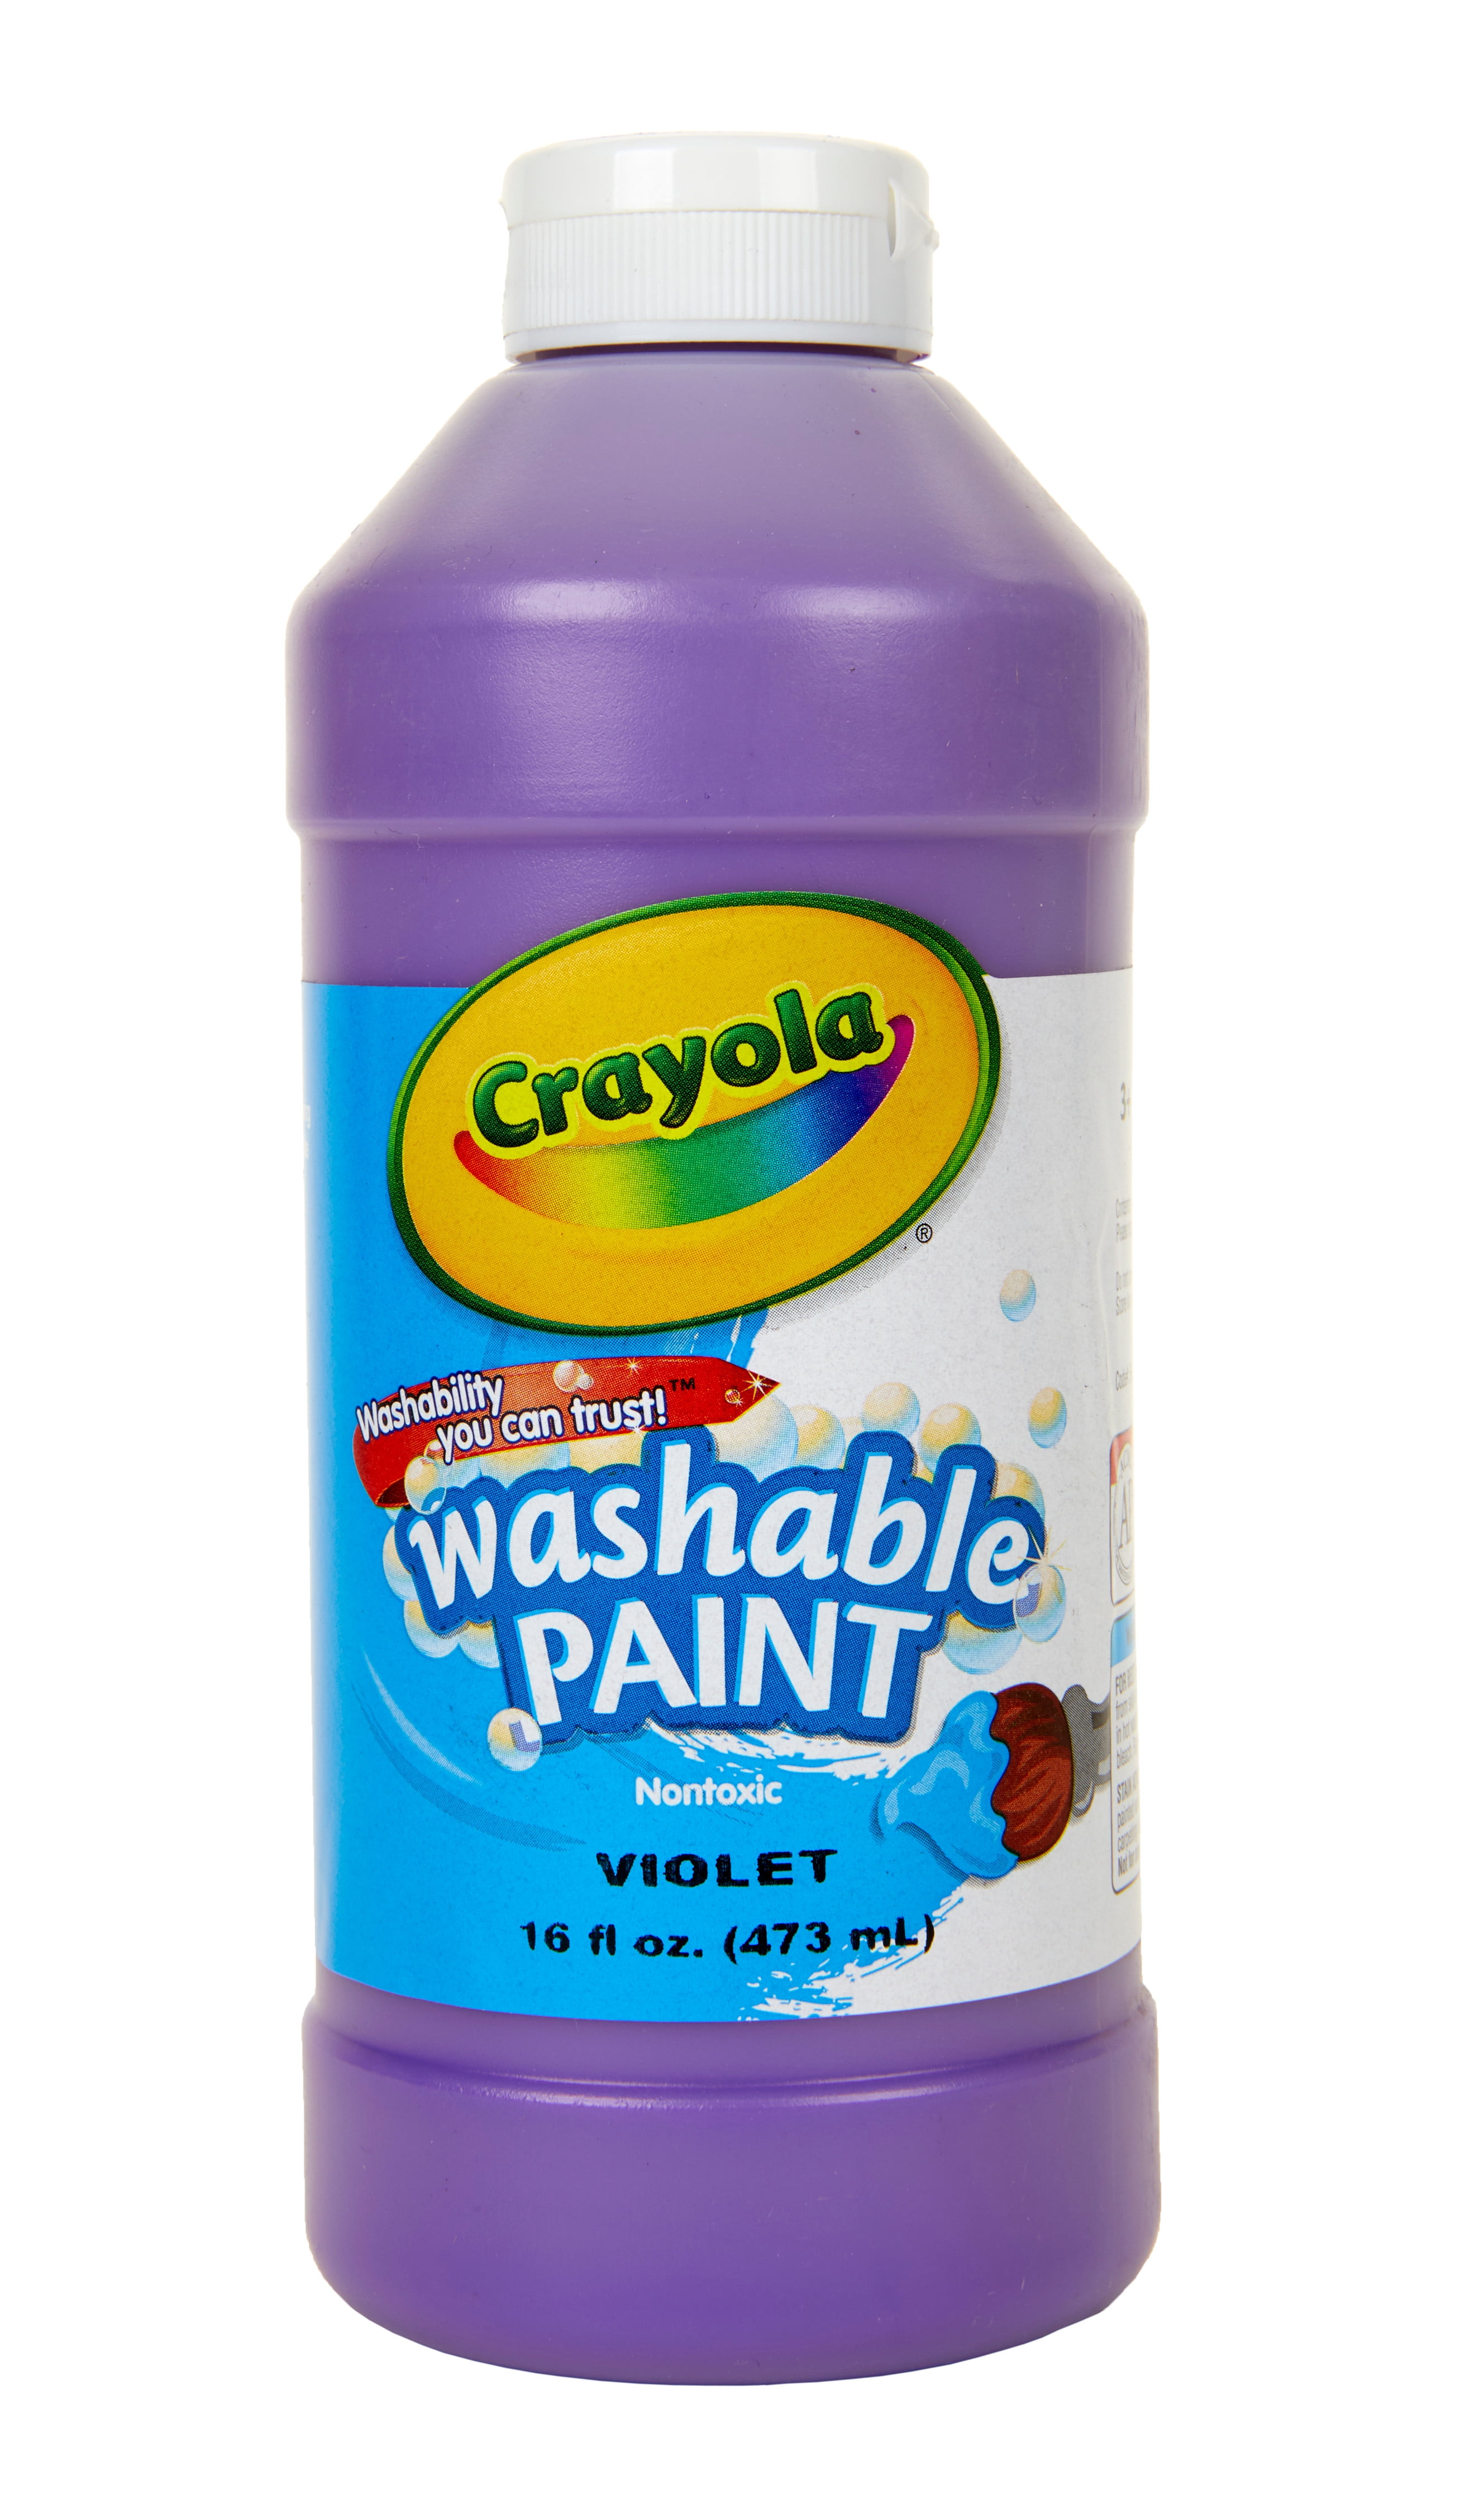 Crayola Washable Finger Paint, White, 16 oz - 3 / White